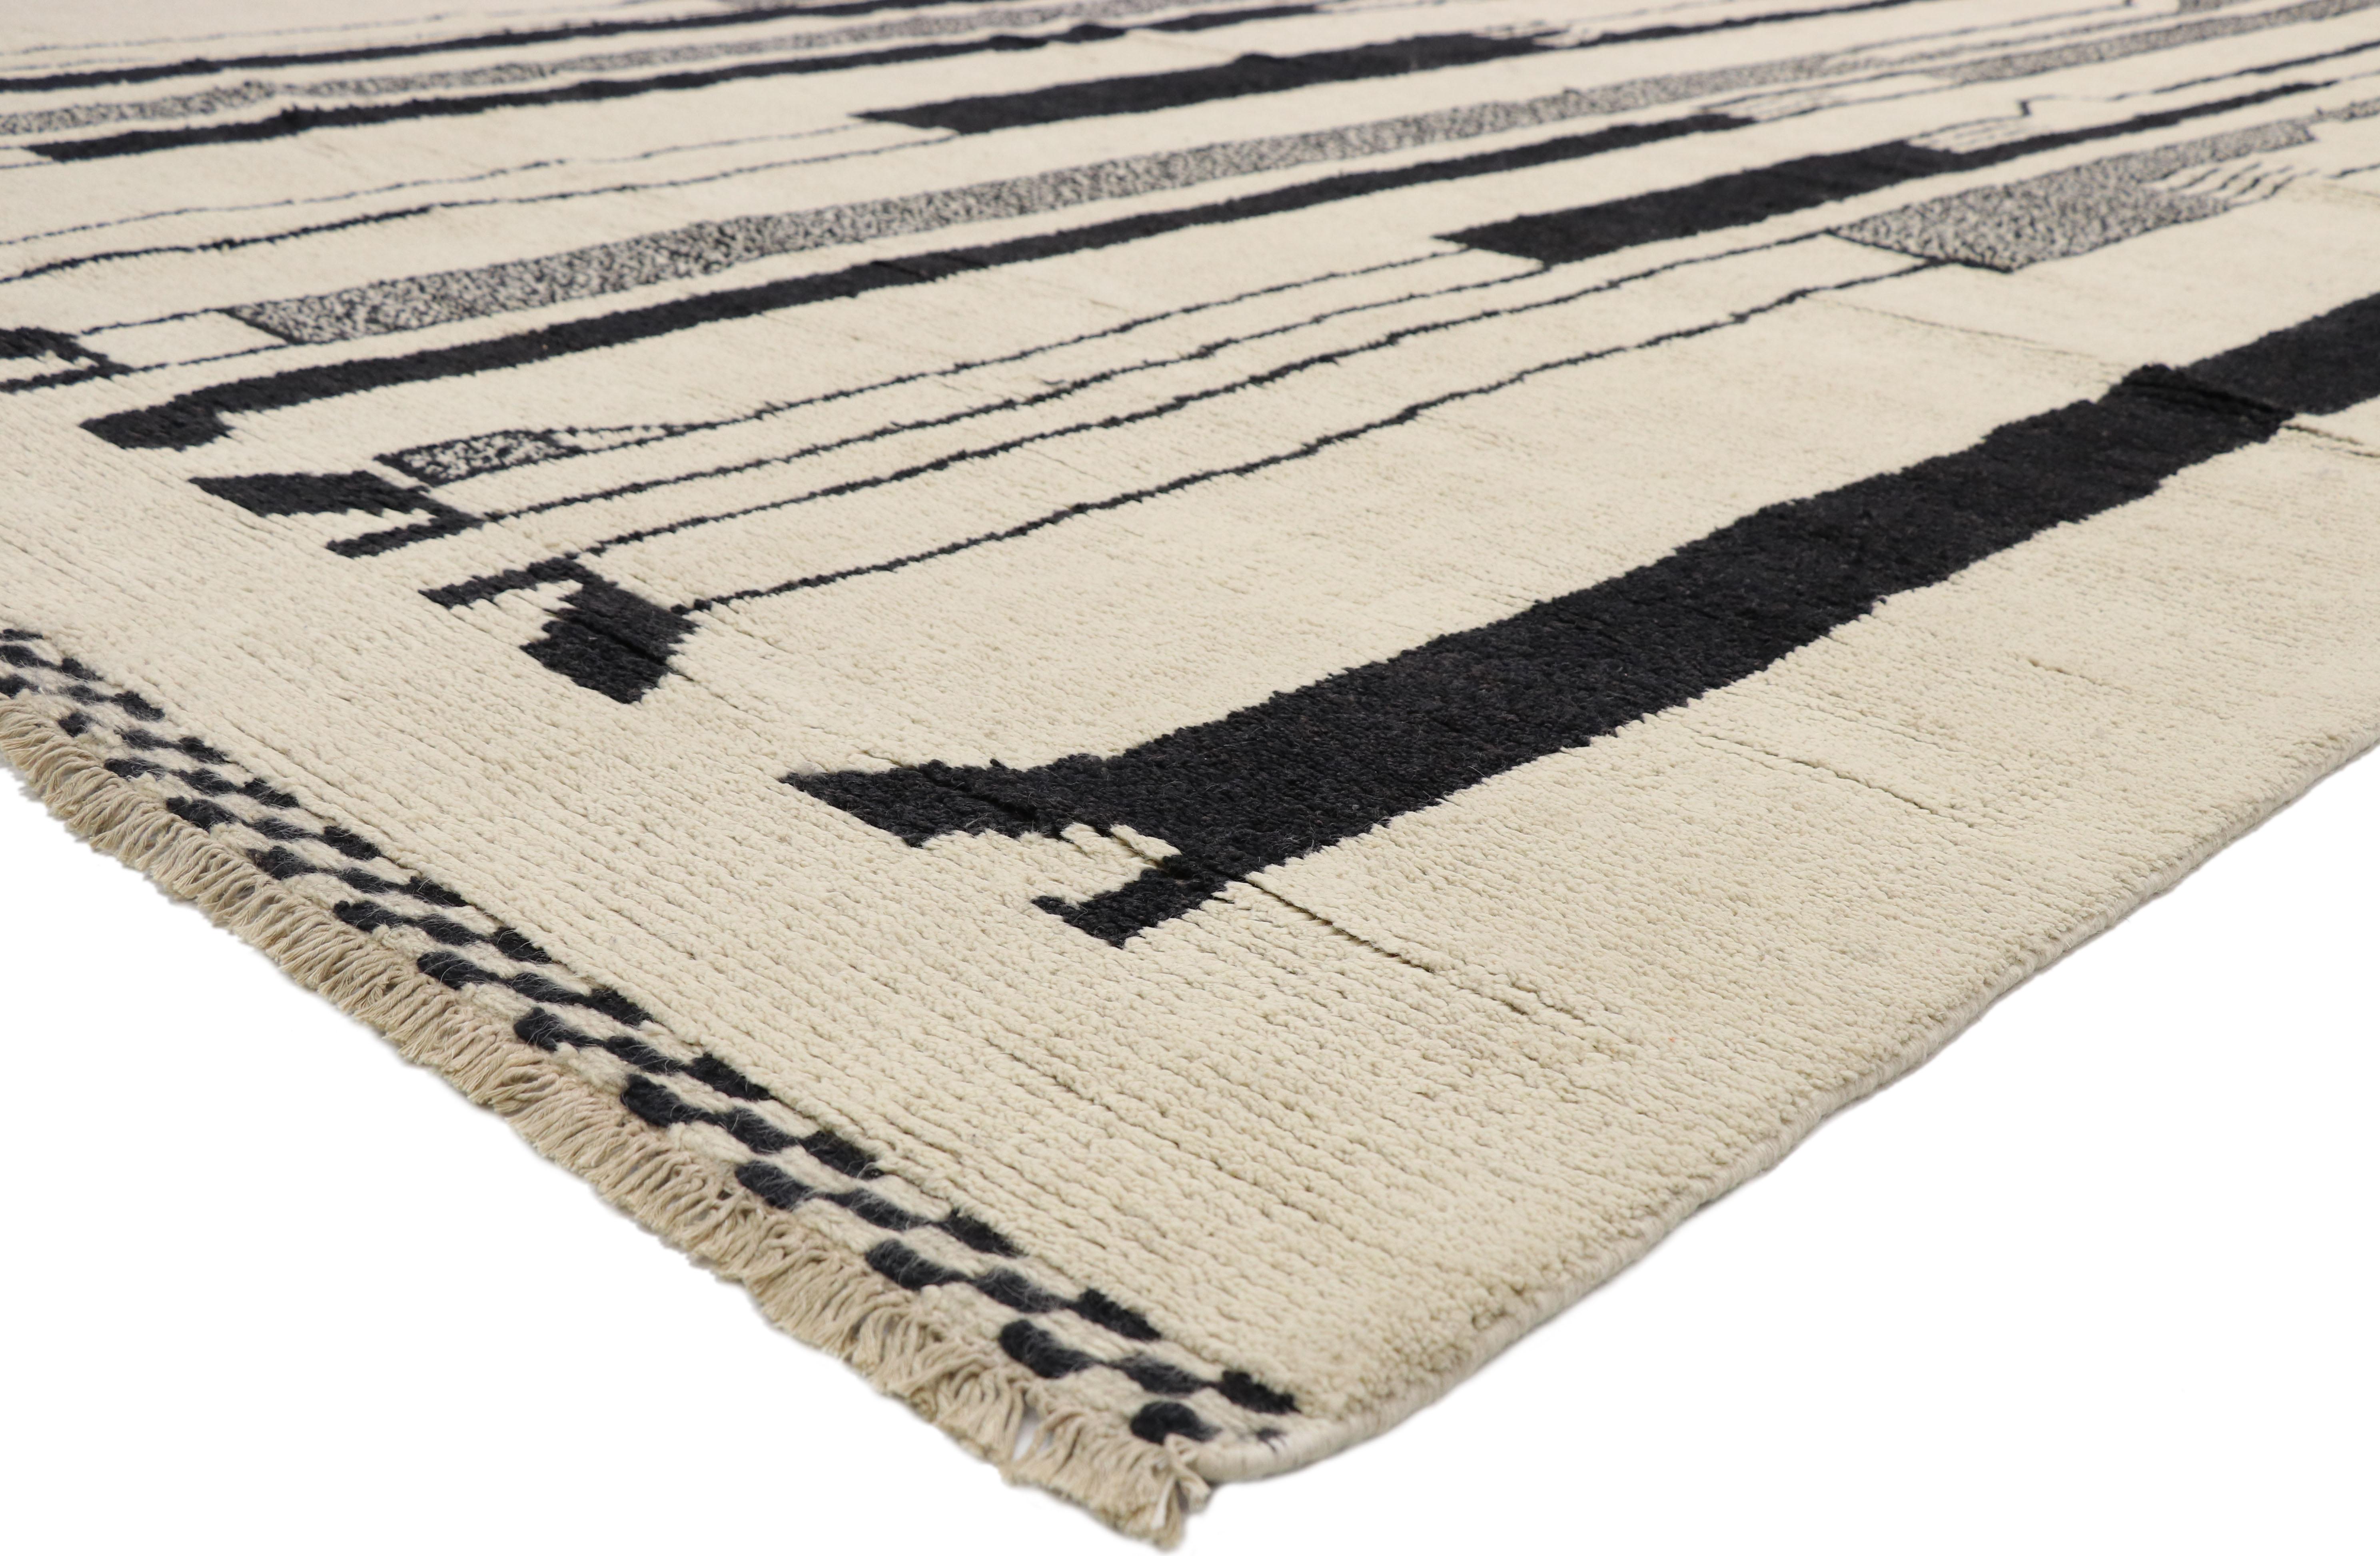 80531, neuer zeitgenössischer marokkanischer Teppich Inspiriert von Alberto Giacometti Dogon-Stamm. Dieser moderne marokkanische Teppich aus handgeknüpfter Wolle zeichnet sich durch langgestreckte Silhouetten in schwarzer Farbgebung vor einem